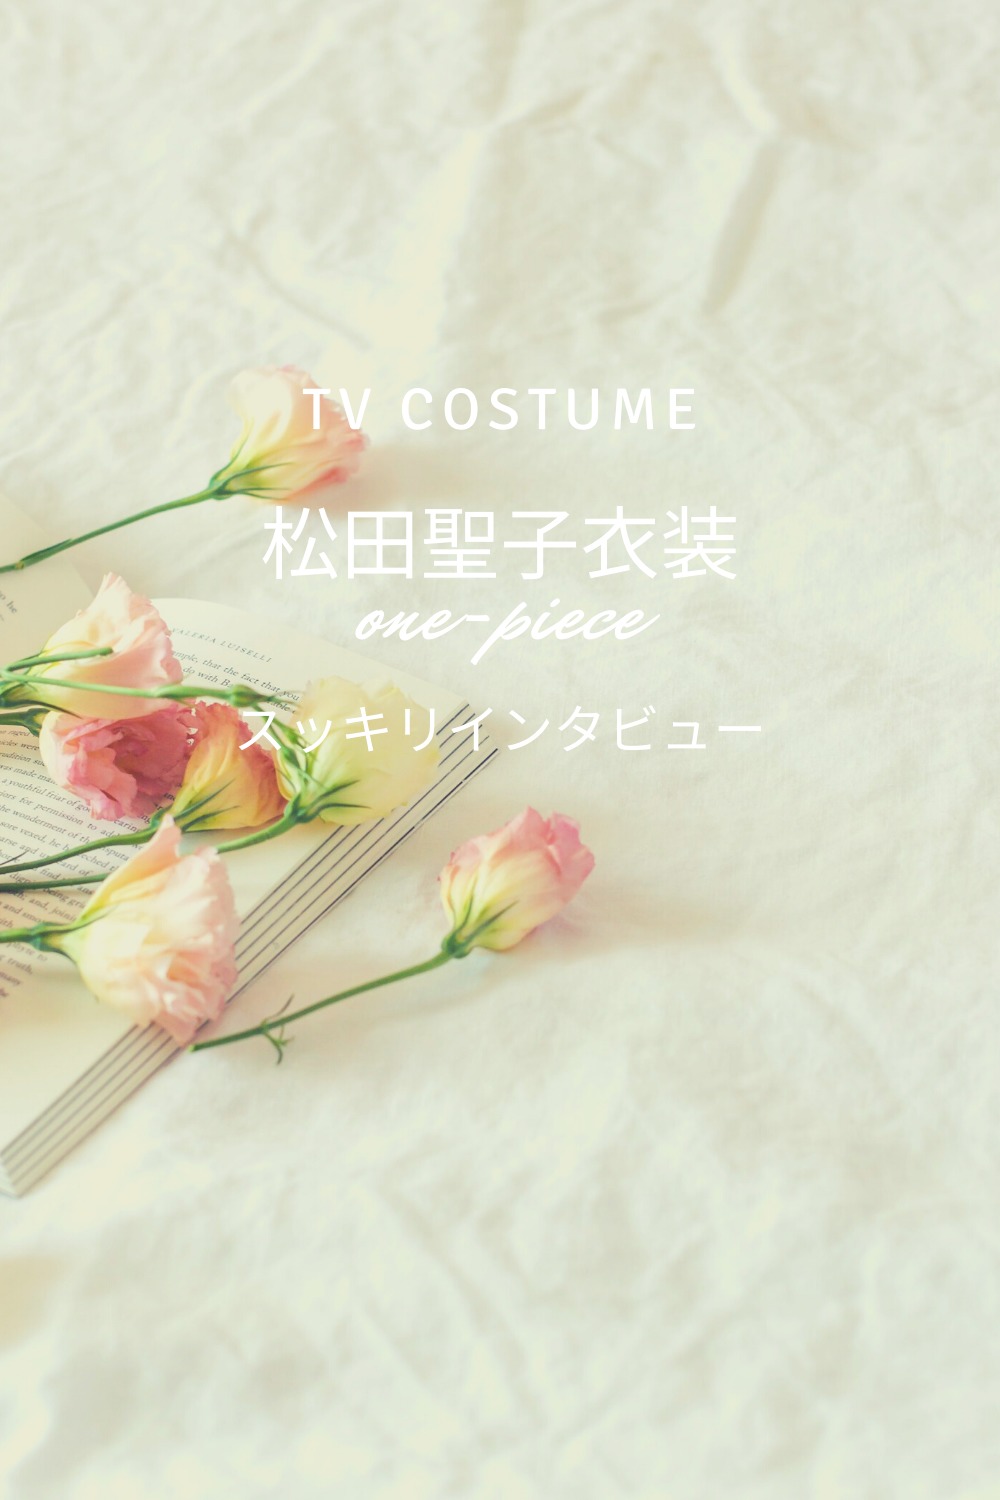 スッキリ松田聖子衣装ワンピースのブランドは 最新40周年アルバム 9 30放送 Fashiondrawer